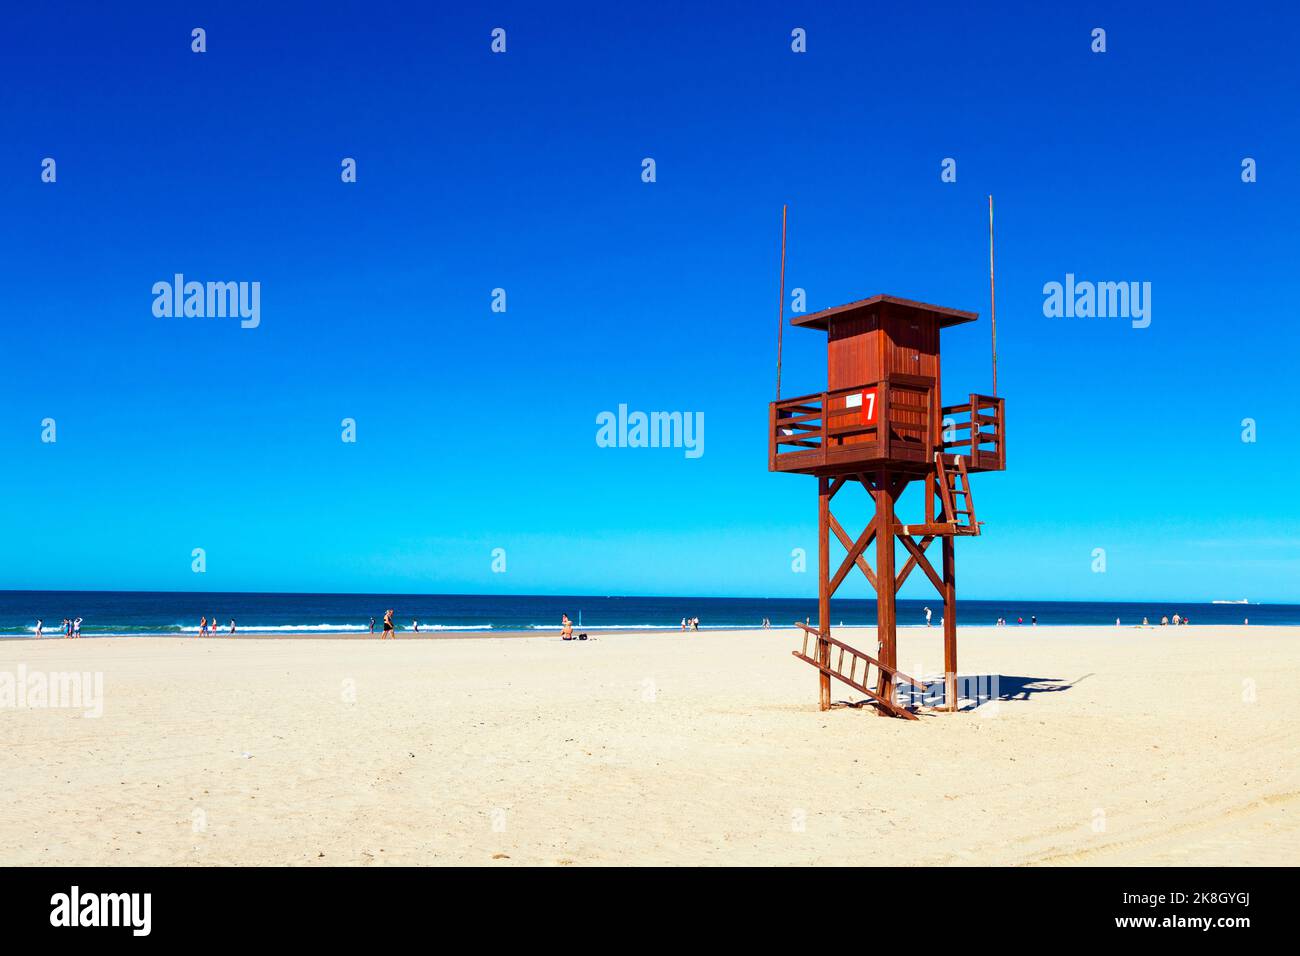 Red wooden lifeguard tower at Playa de la Barrosa, Cadiz, Spain Stock Photo